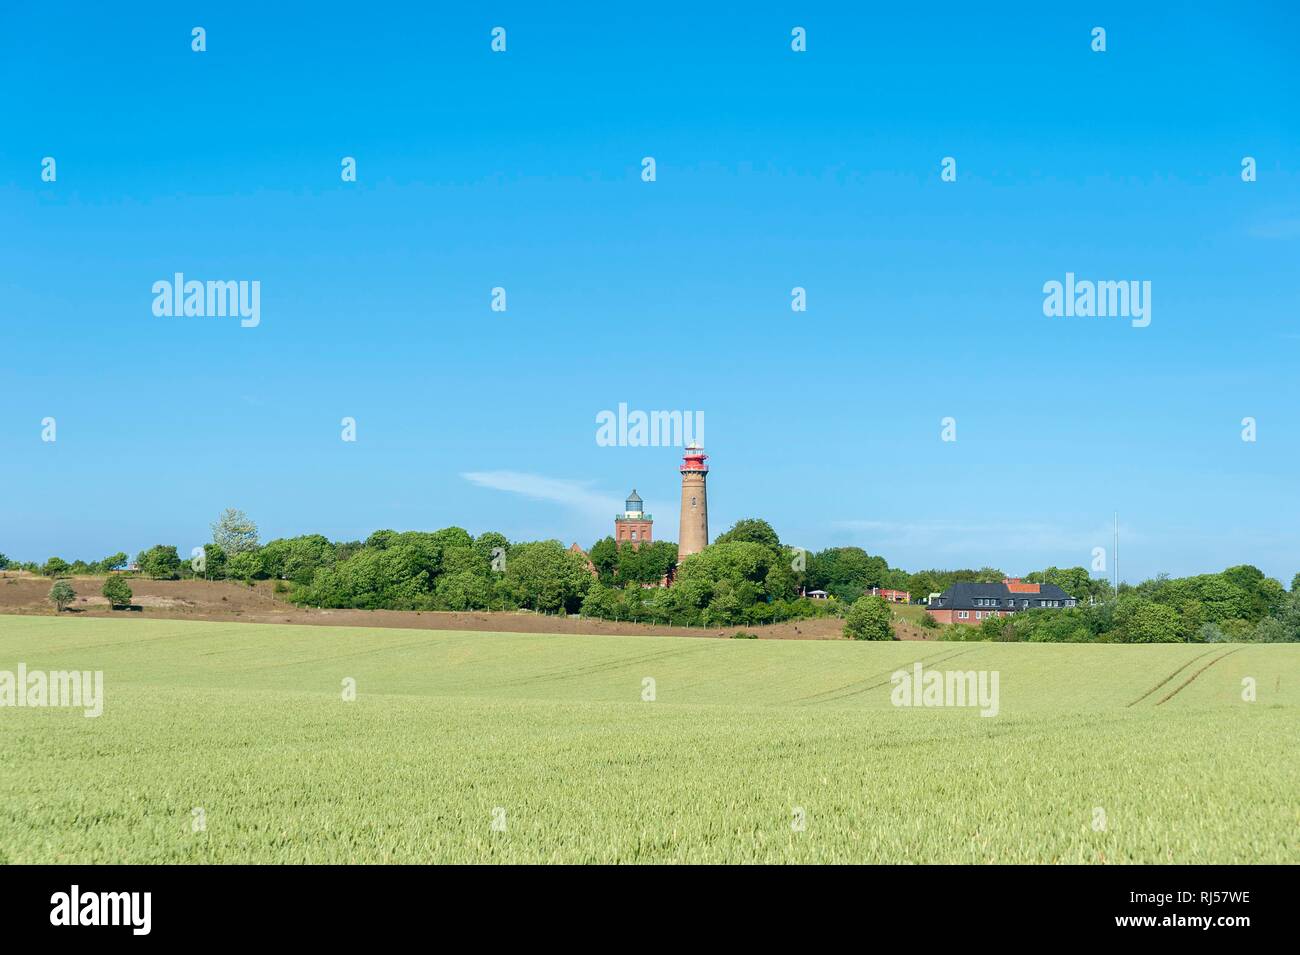 El grano en el campo delante de Schinkel Tower y el nuevo faro, Putgarten, Rügen, Mecklemburgo-Pomerania Occidental, Alemania Foto de stock